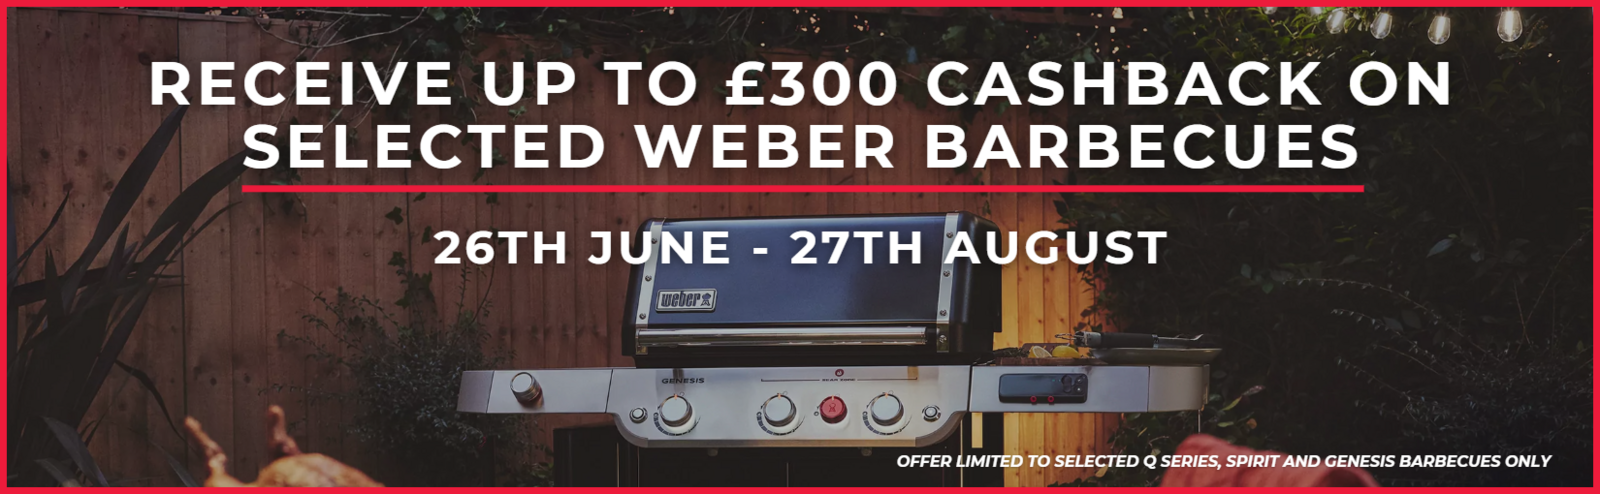 Weber Cashback Offer Web Banner 1610X550Px